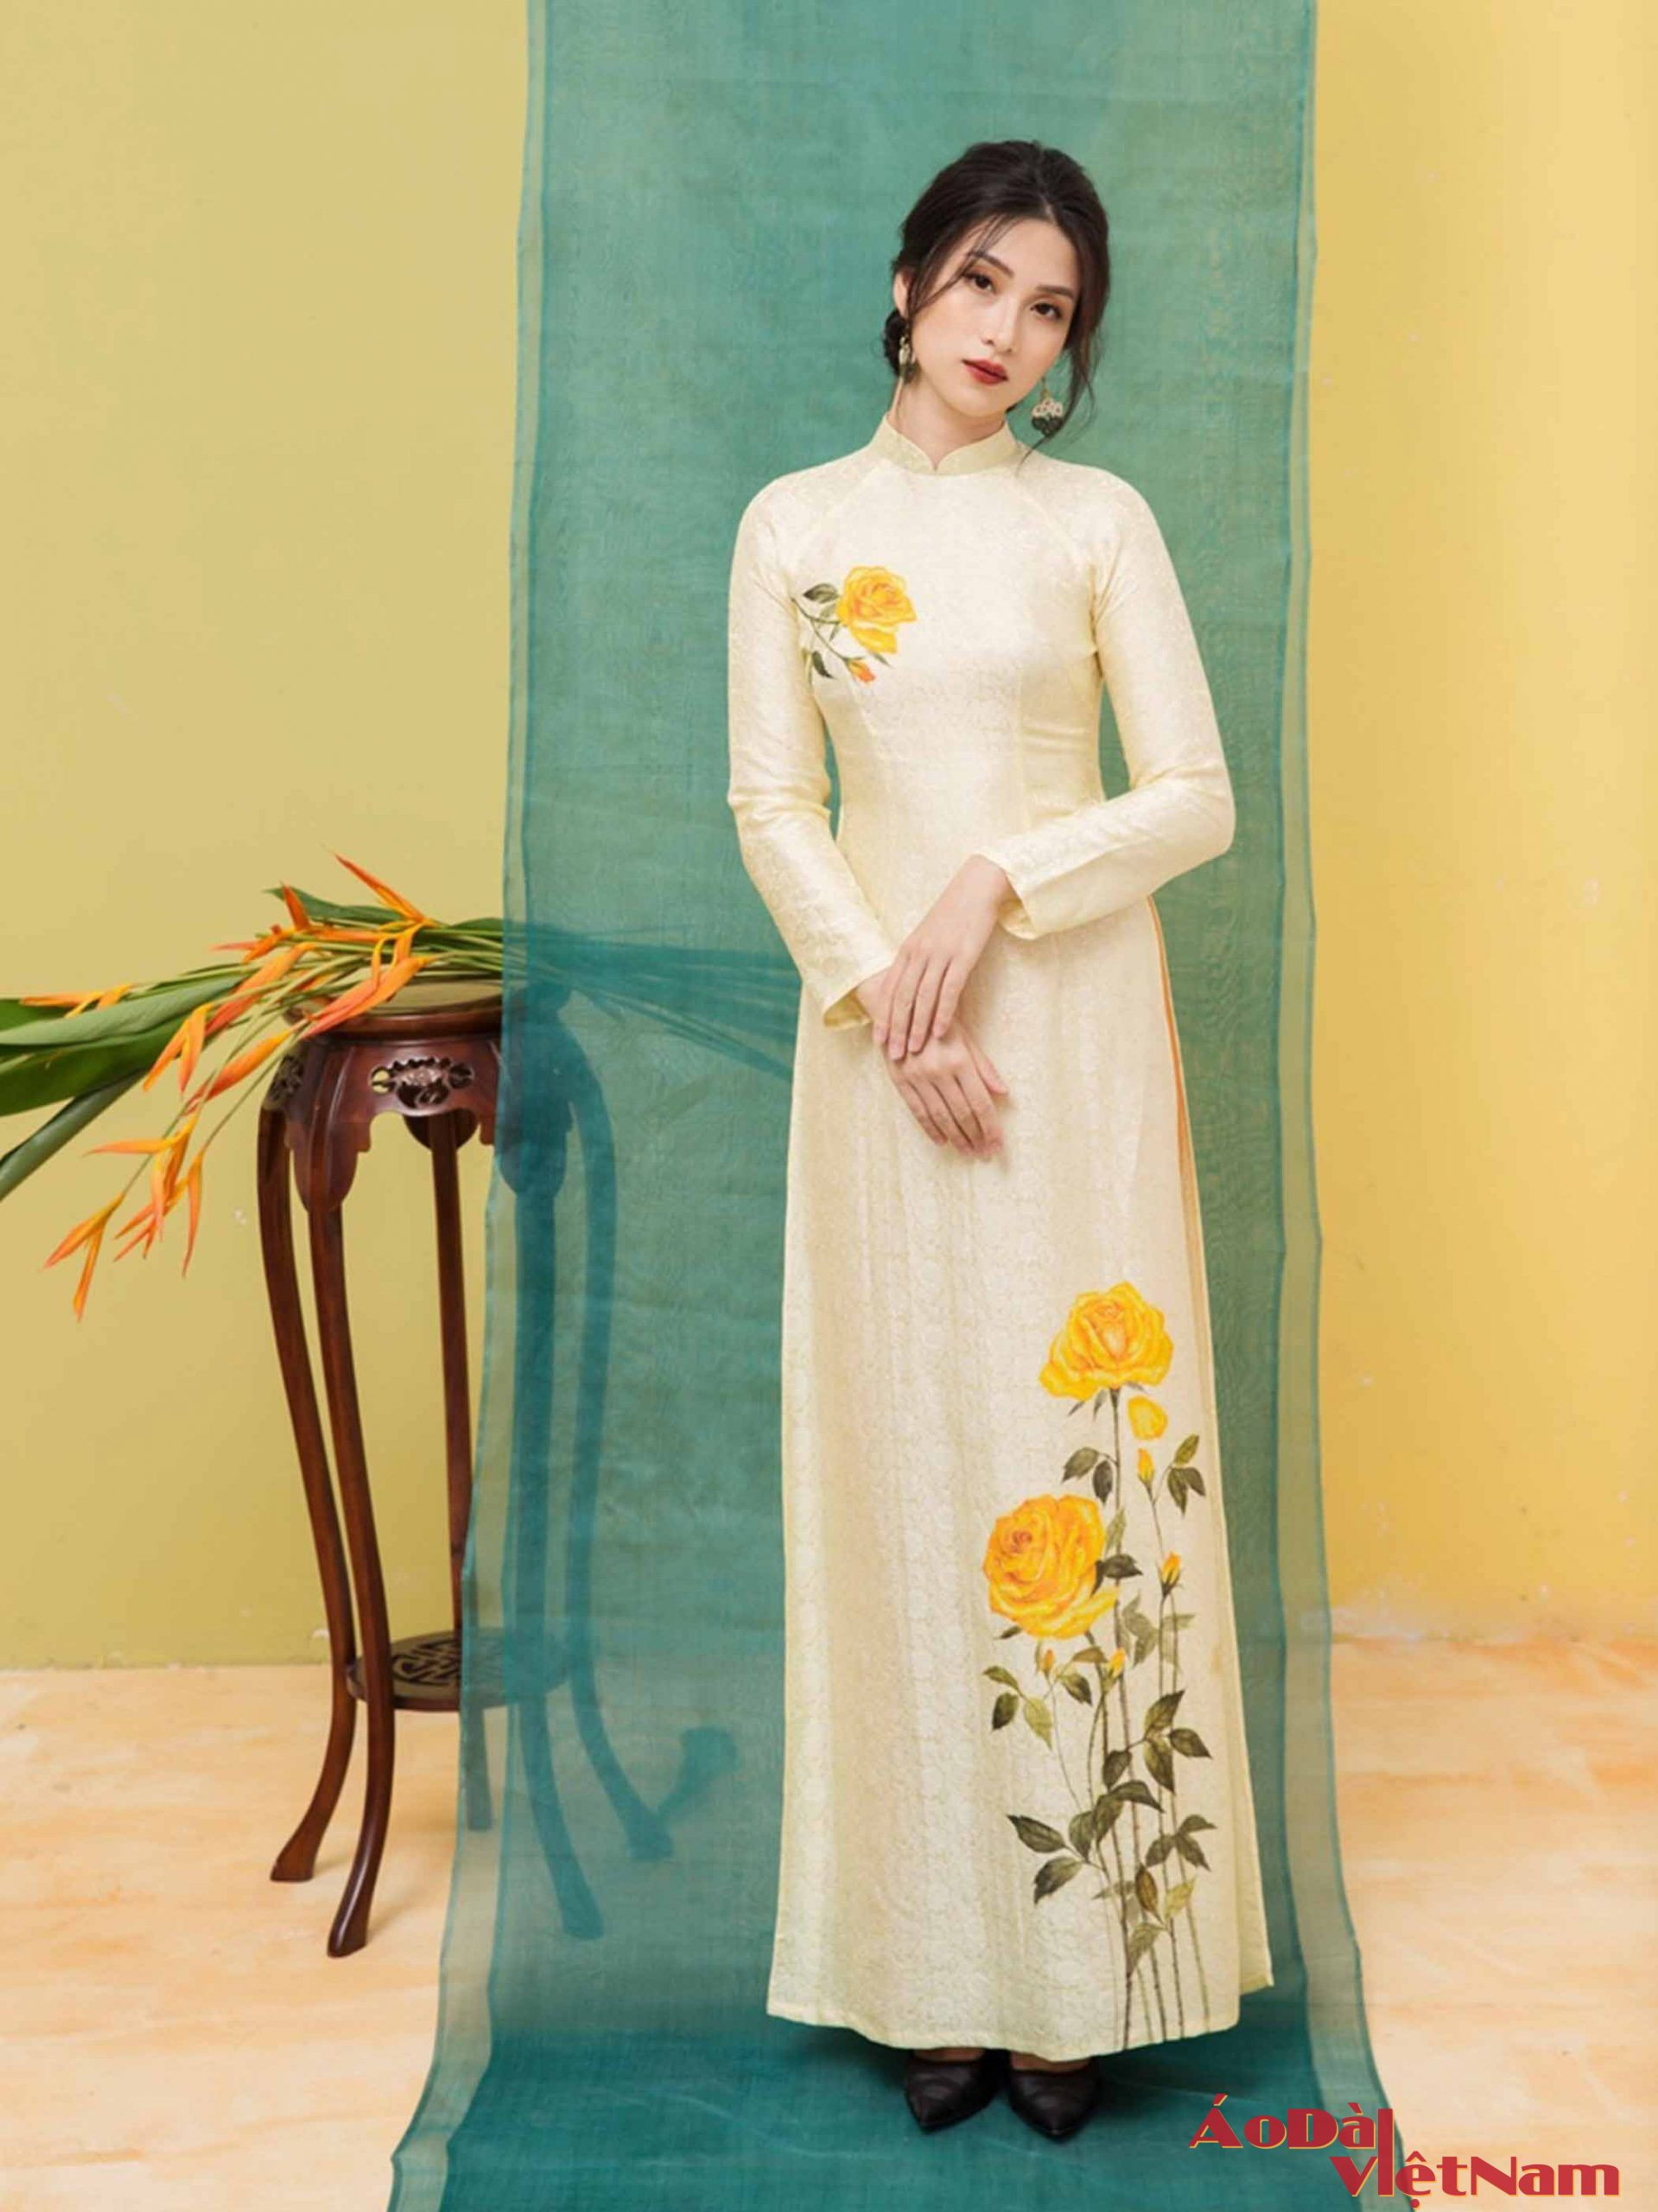 cửa hàng bán áo dài tại Hà Nội - Nơi tôn vinh vẻ đẹp phụ nữ Việt